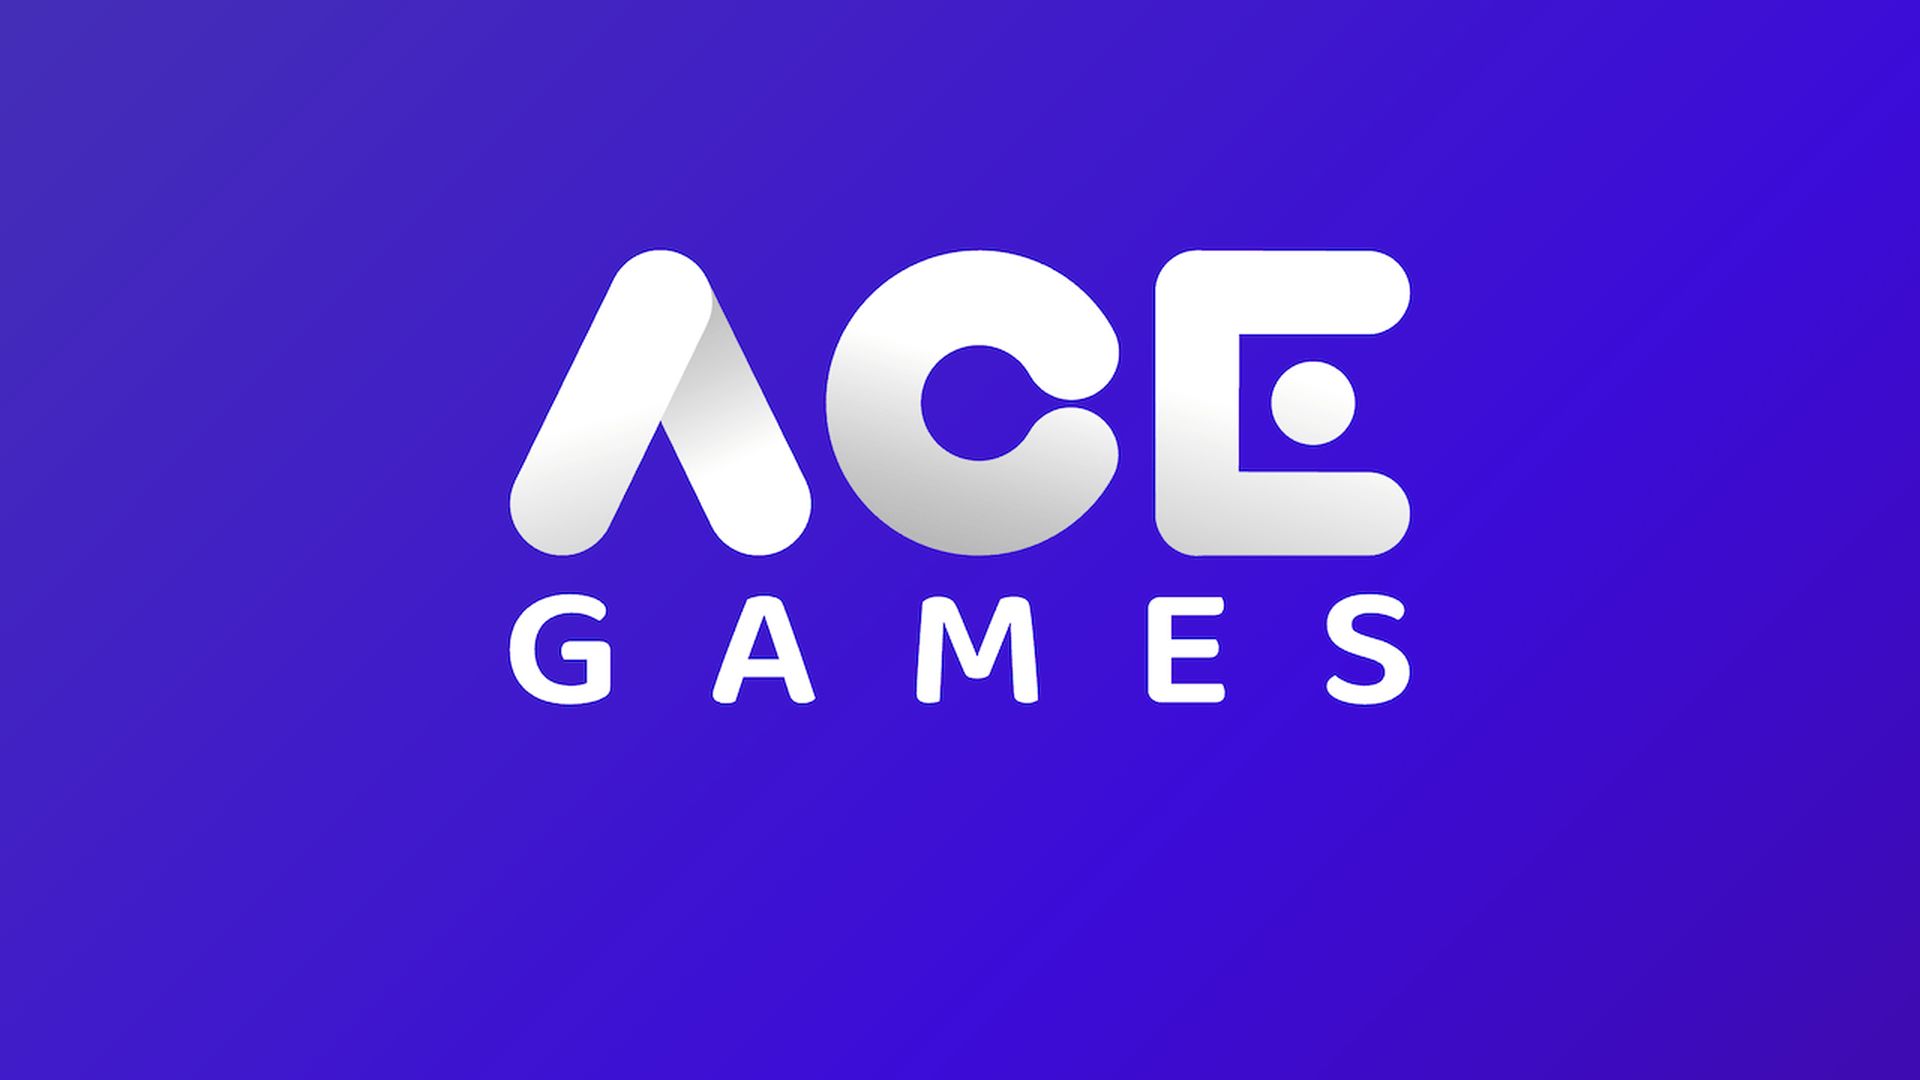 Hedef Girişim, Ace Games'e yatırım yaptı